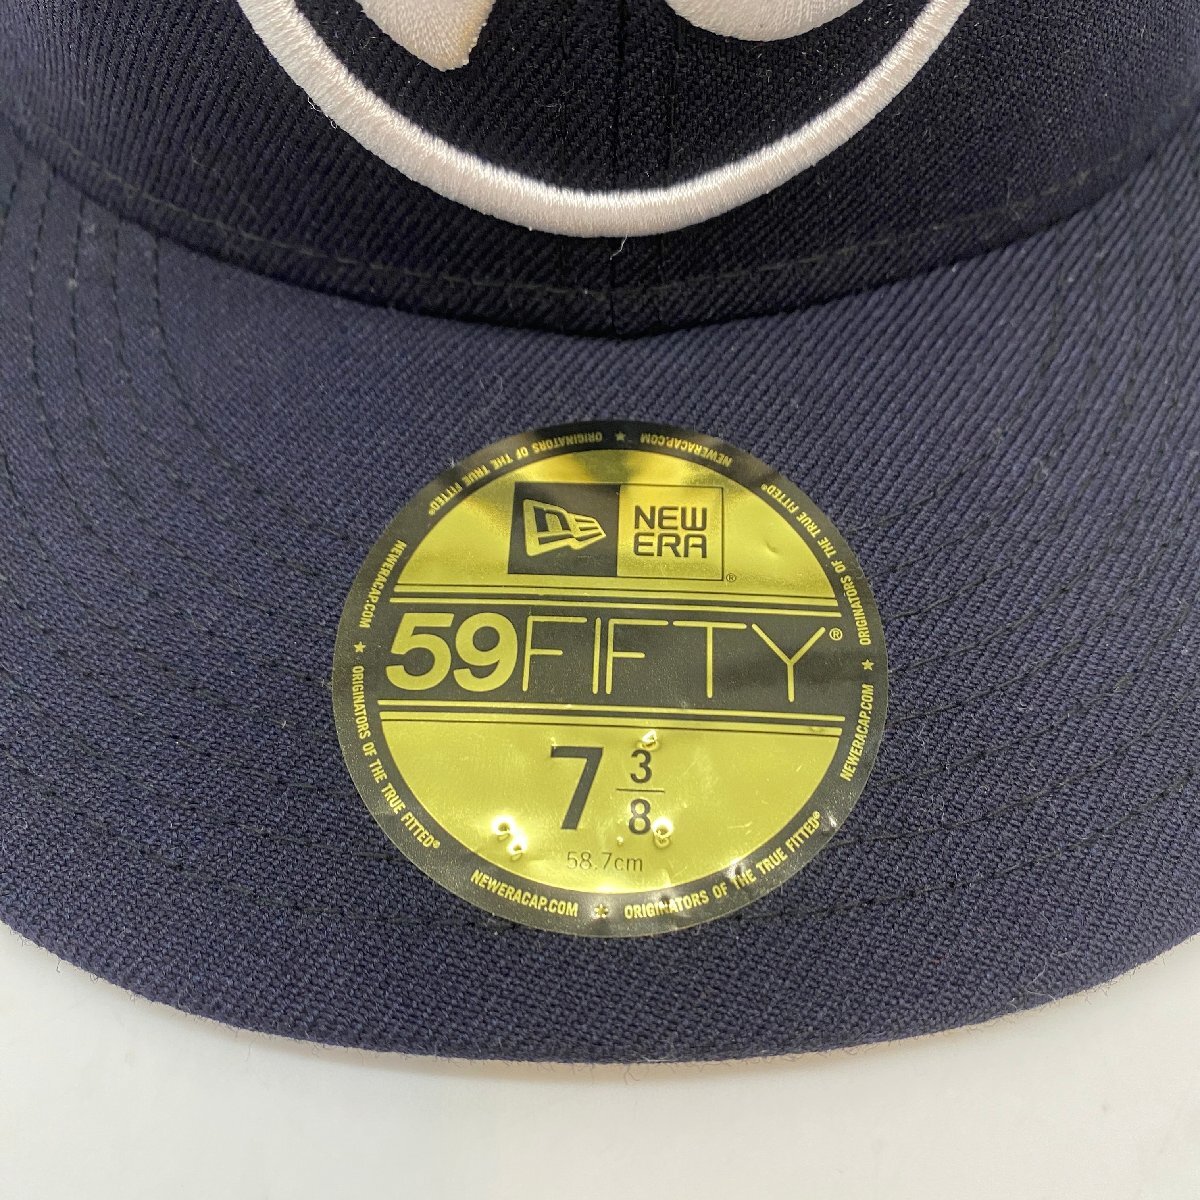 ☆NEW ERA×Richardson ニューエラ×リチャードソン☆59FIFTY コラボ メンズ刺繍キャップ 帽子 Collaboration men's embroidery cap hat_画像2